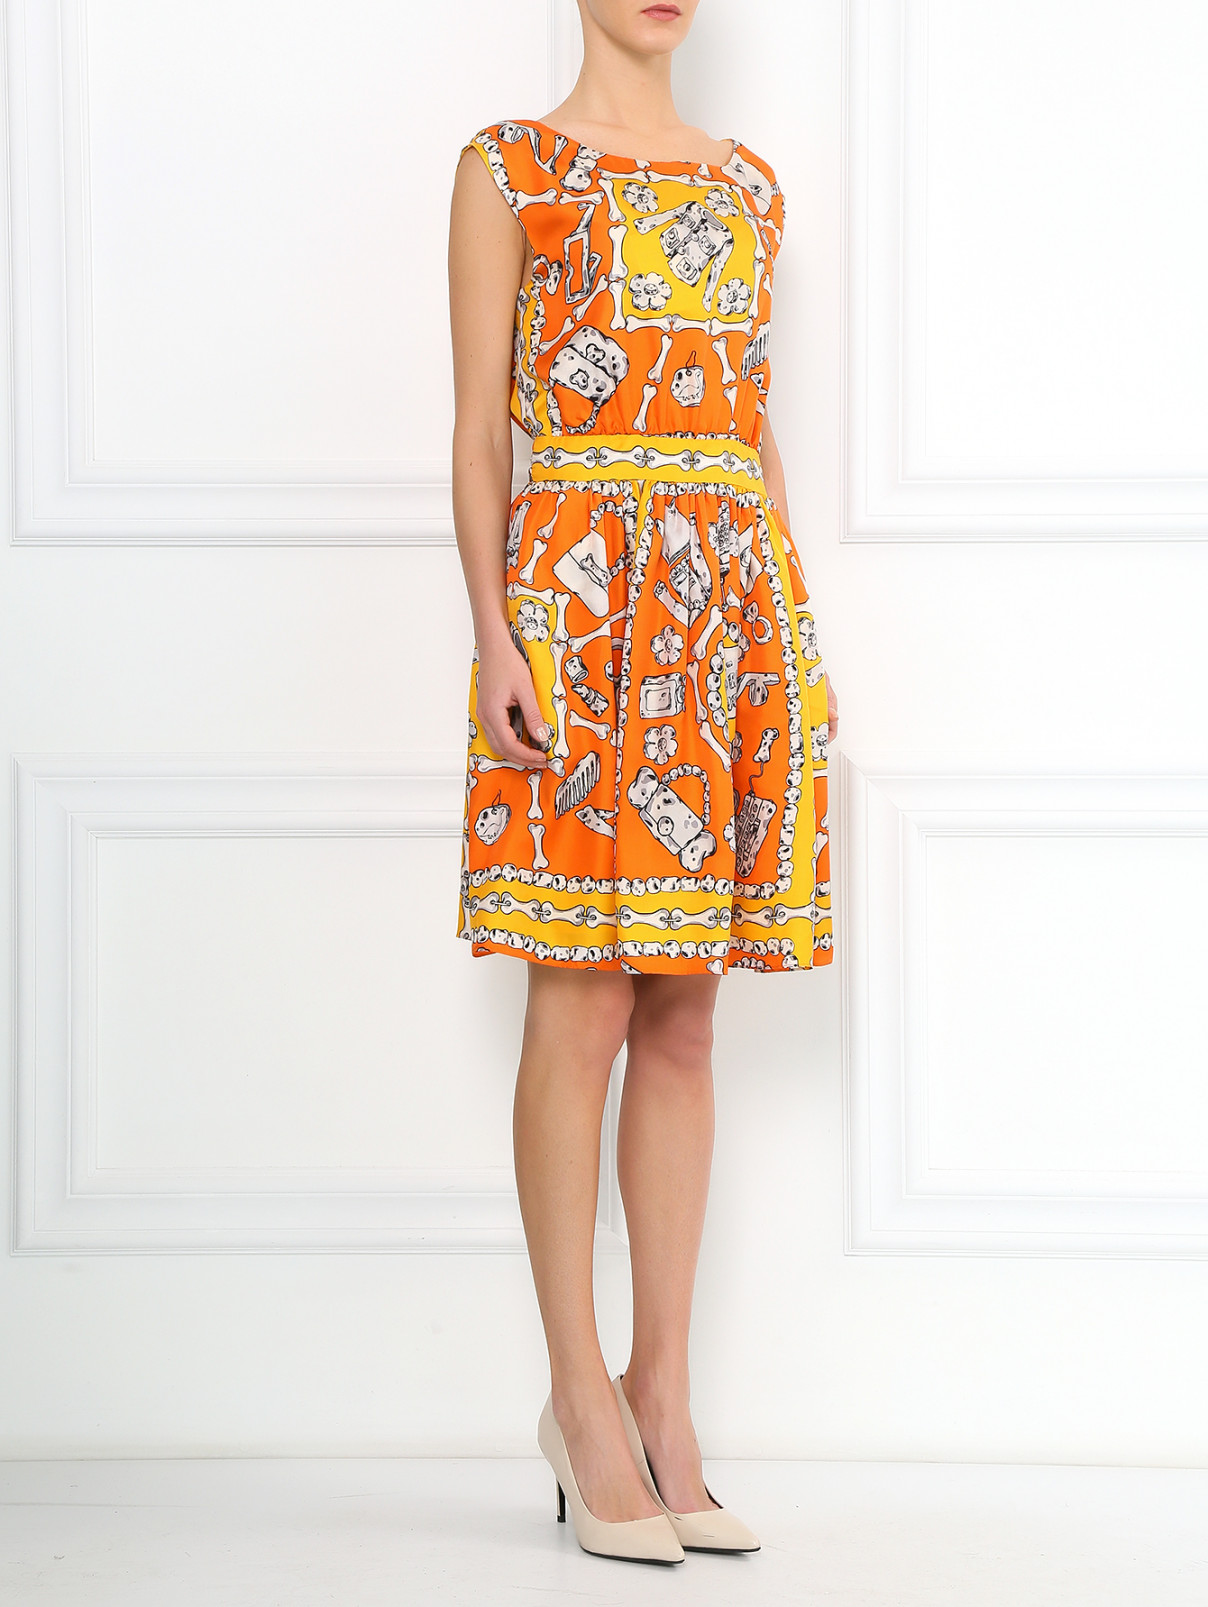 Платье с узором из шелка Moschino Cheap&Chic  –  Модель Общий вид  – Цвет:  Оранжевый